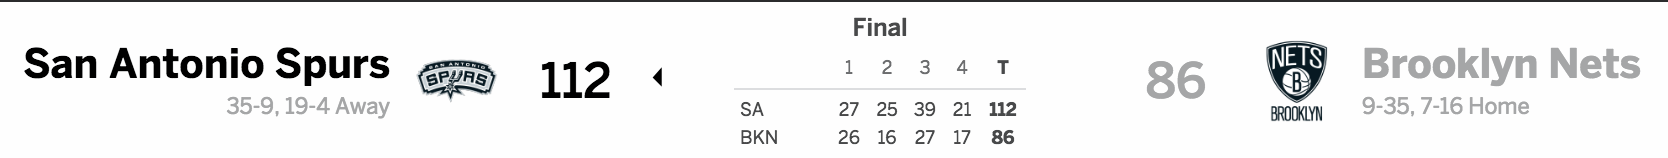 Brooklyn Nets vs. San Antonio Spurs 01-23-17 Score